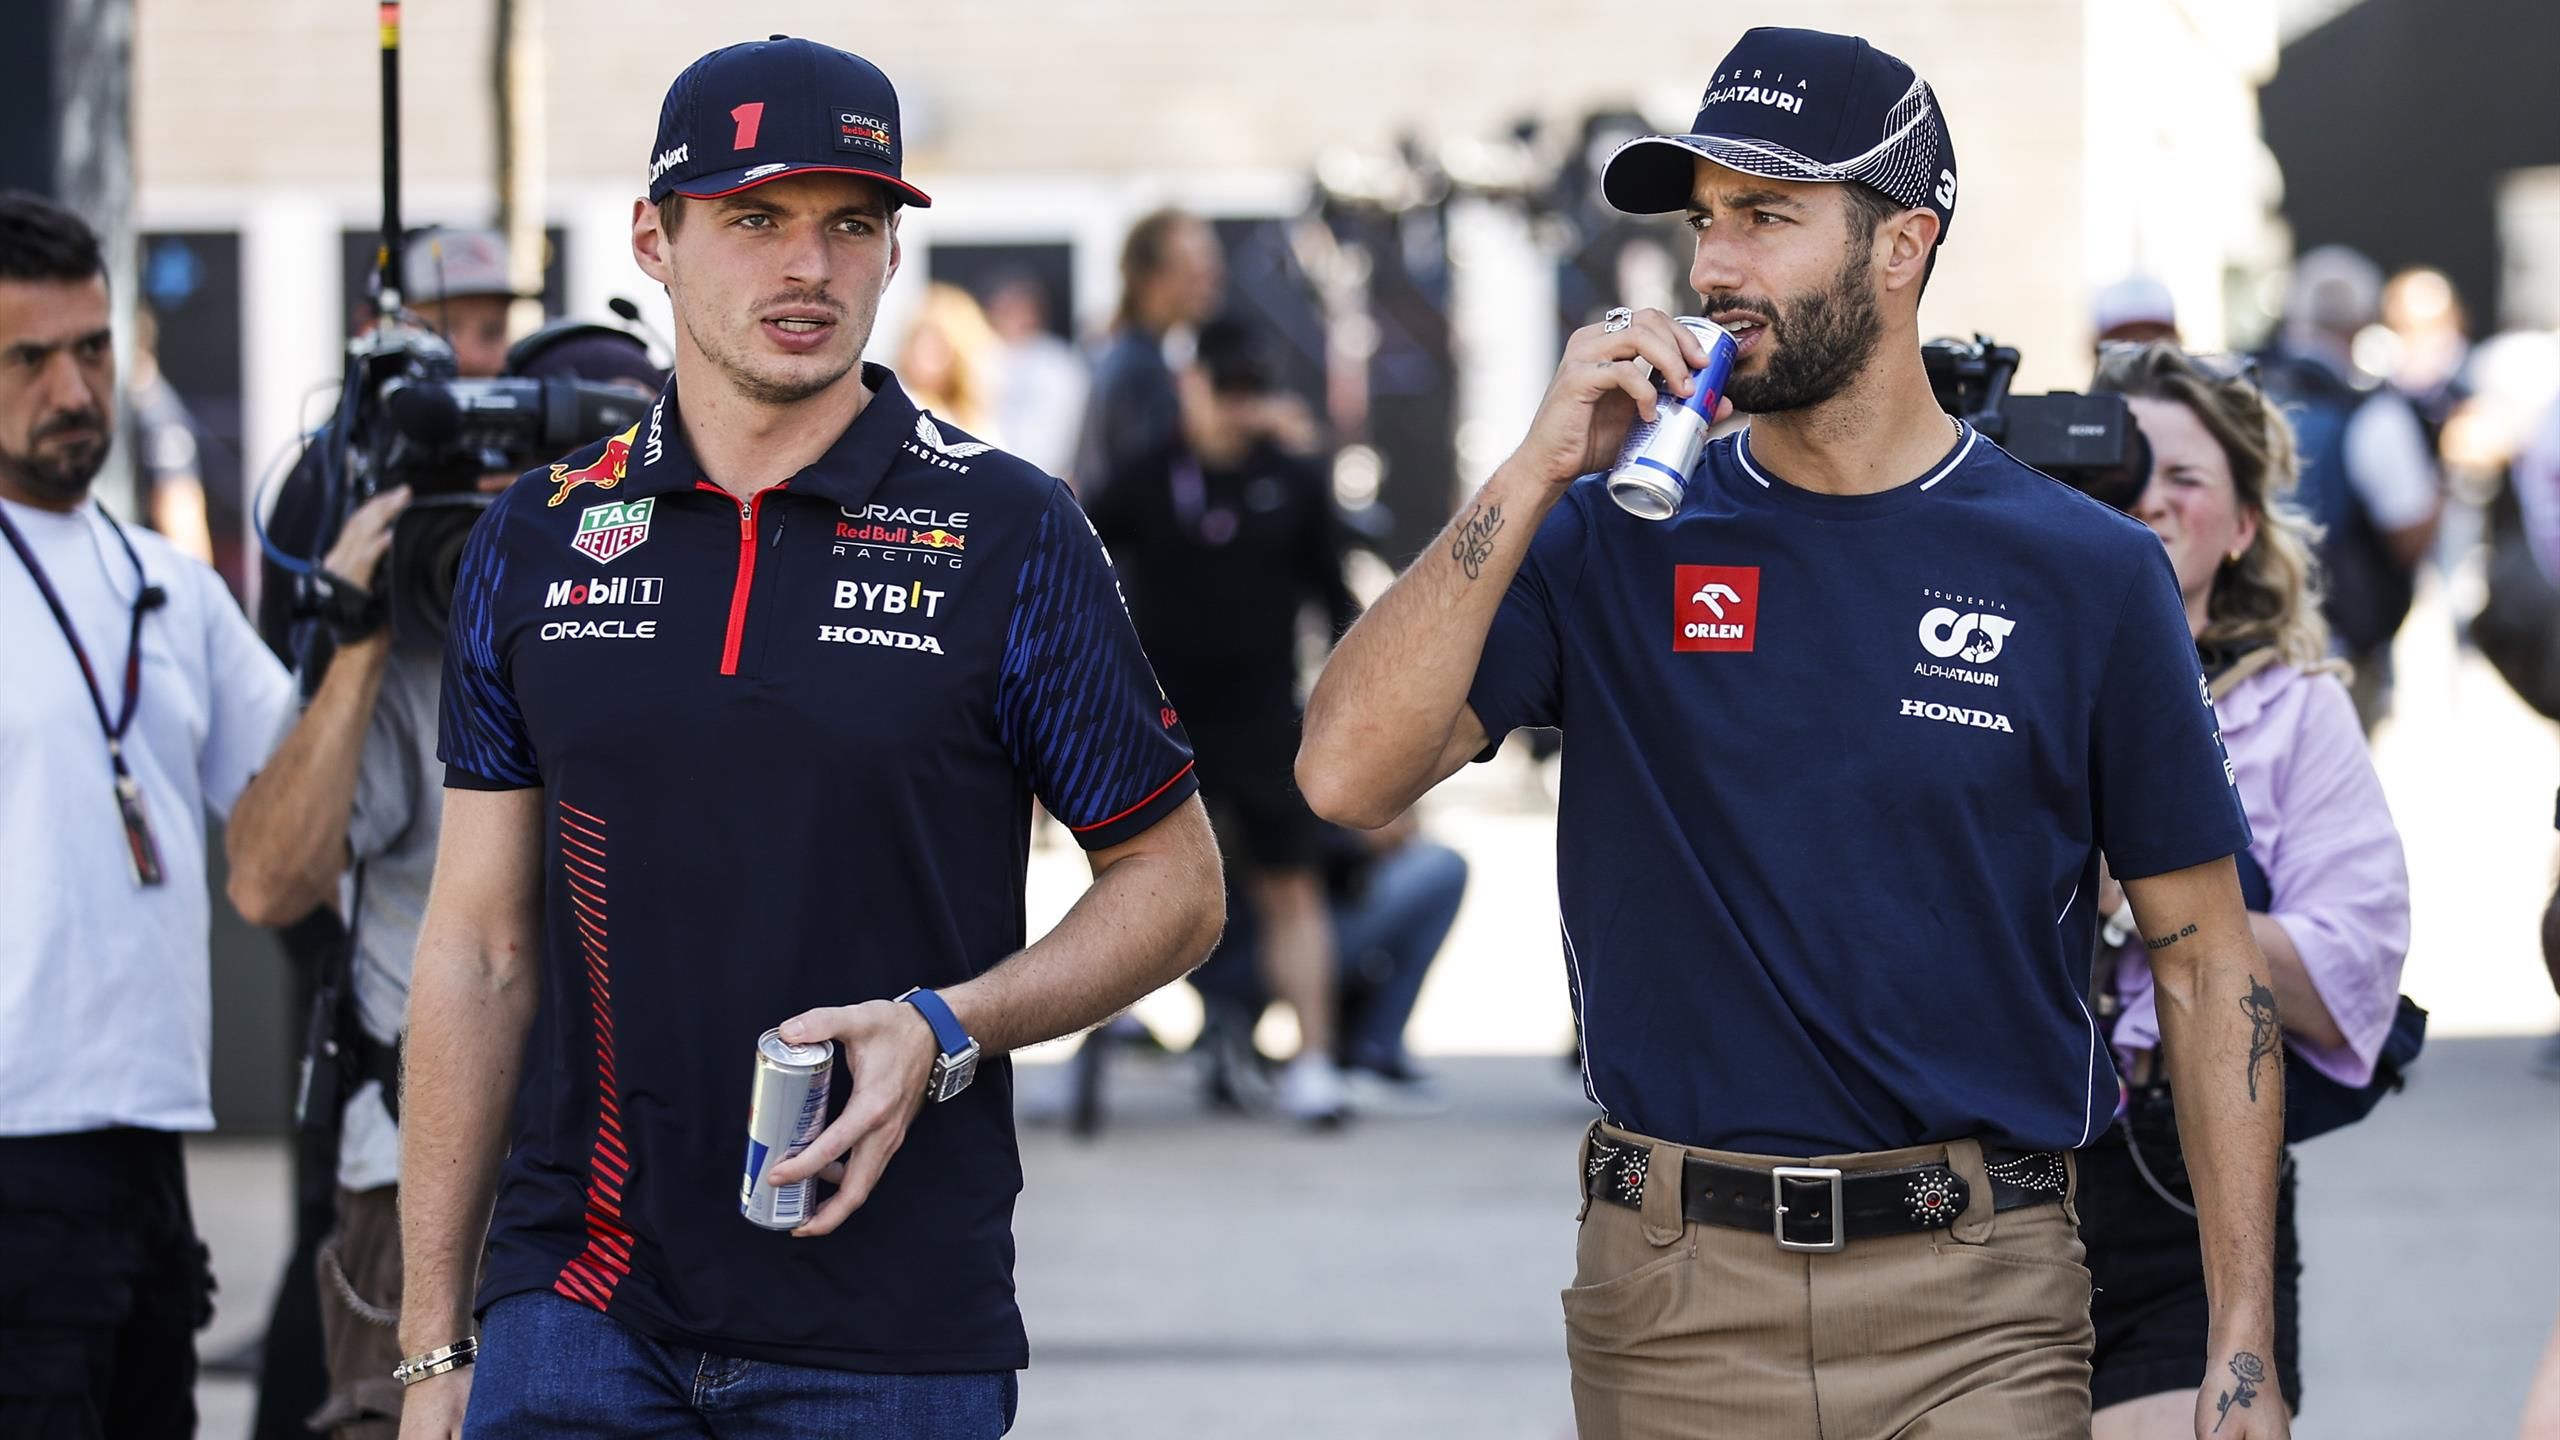 GP von Brasilien Daniel Ricciardo sitzt in Sergio Pérez Nacken - Max Verstappen genervt von Gerüchten